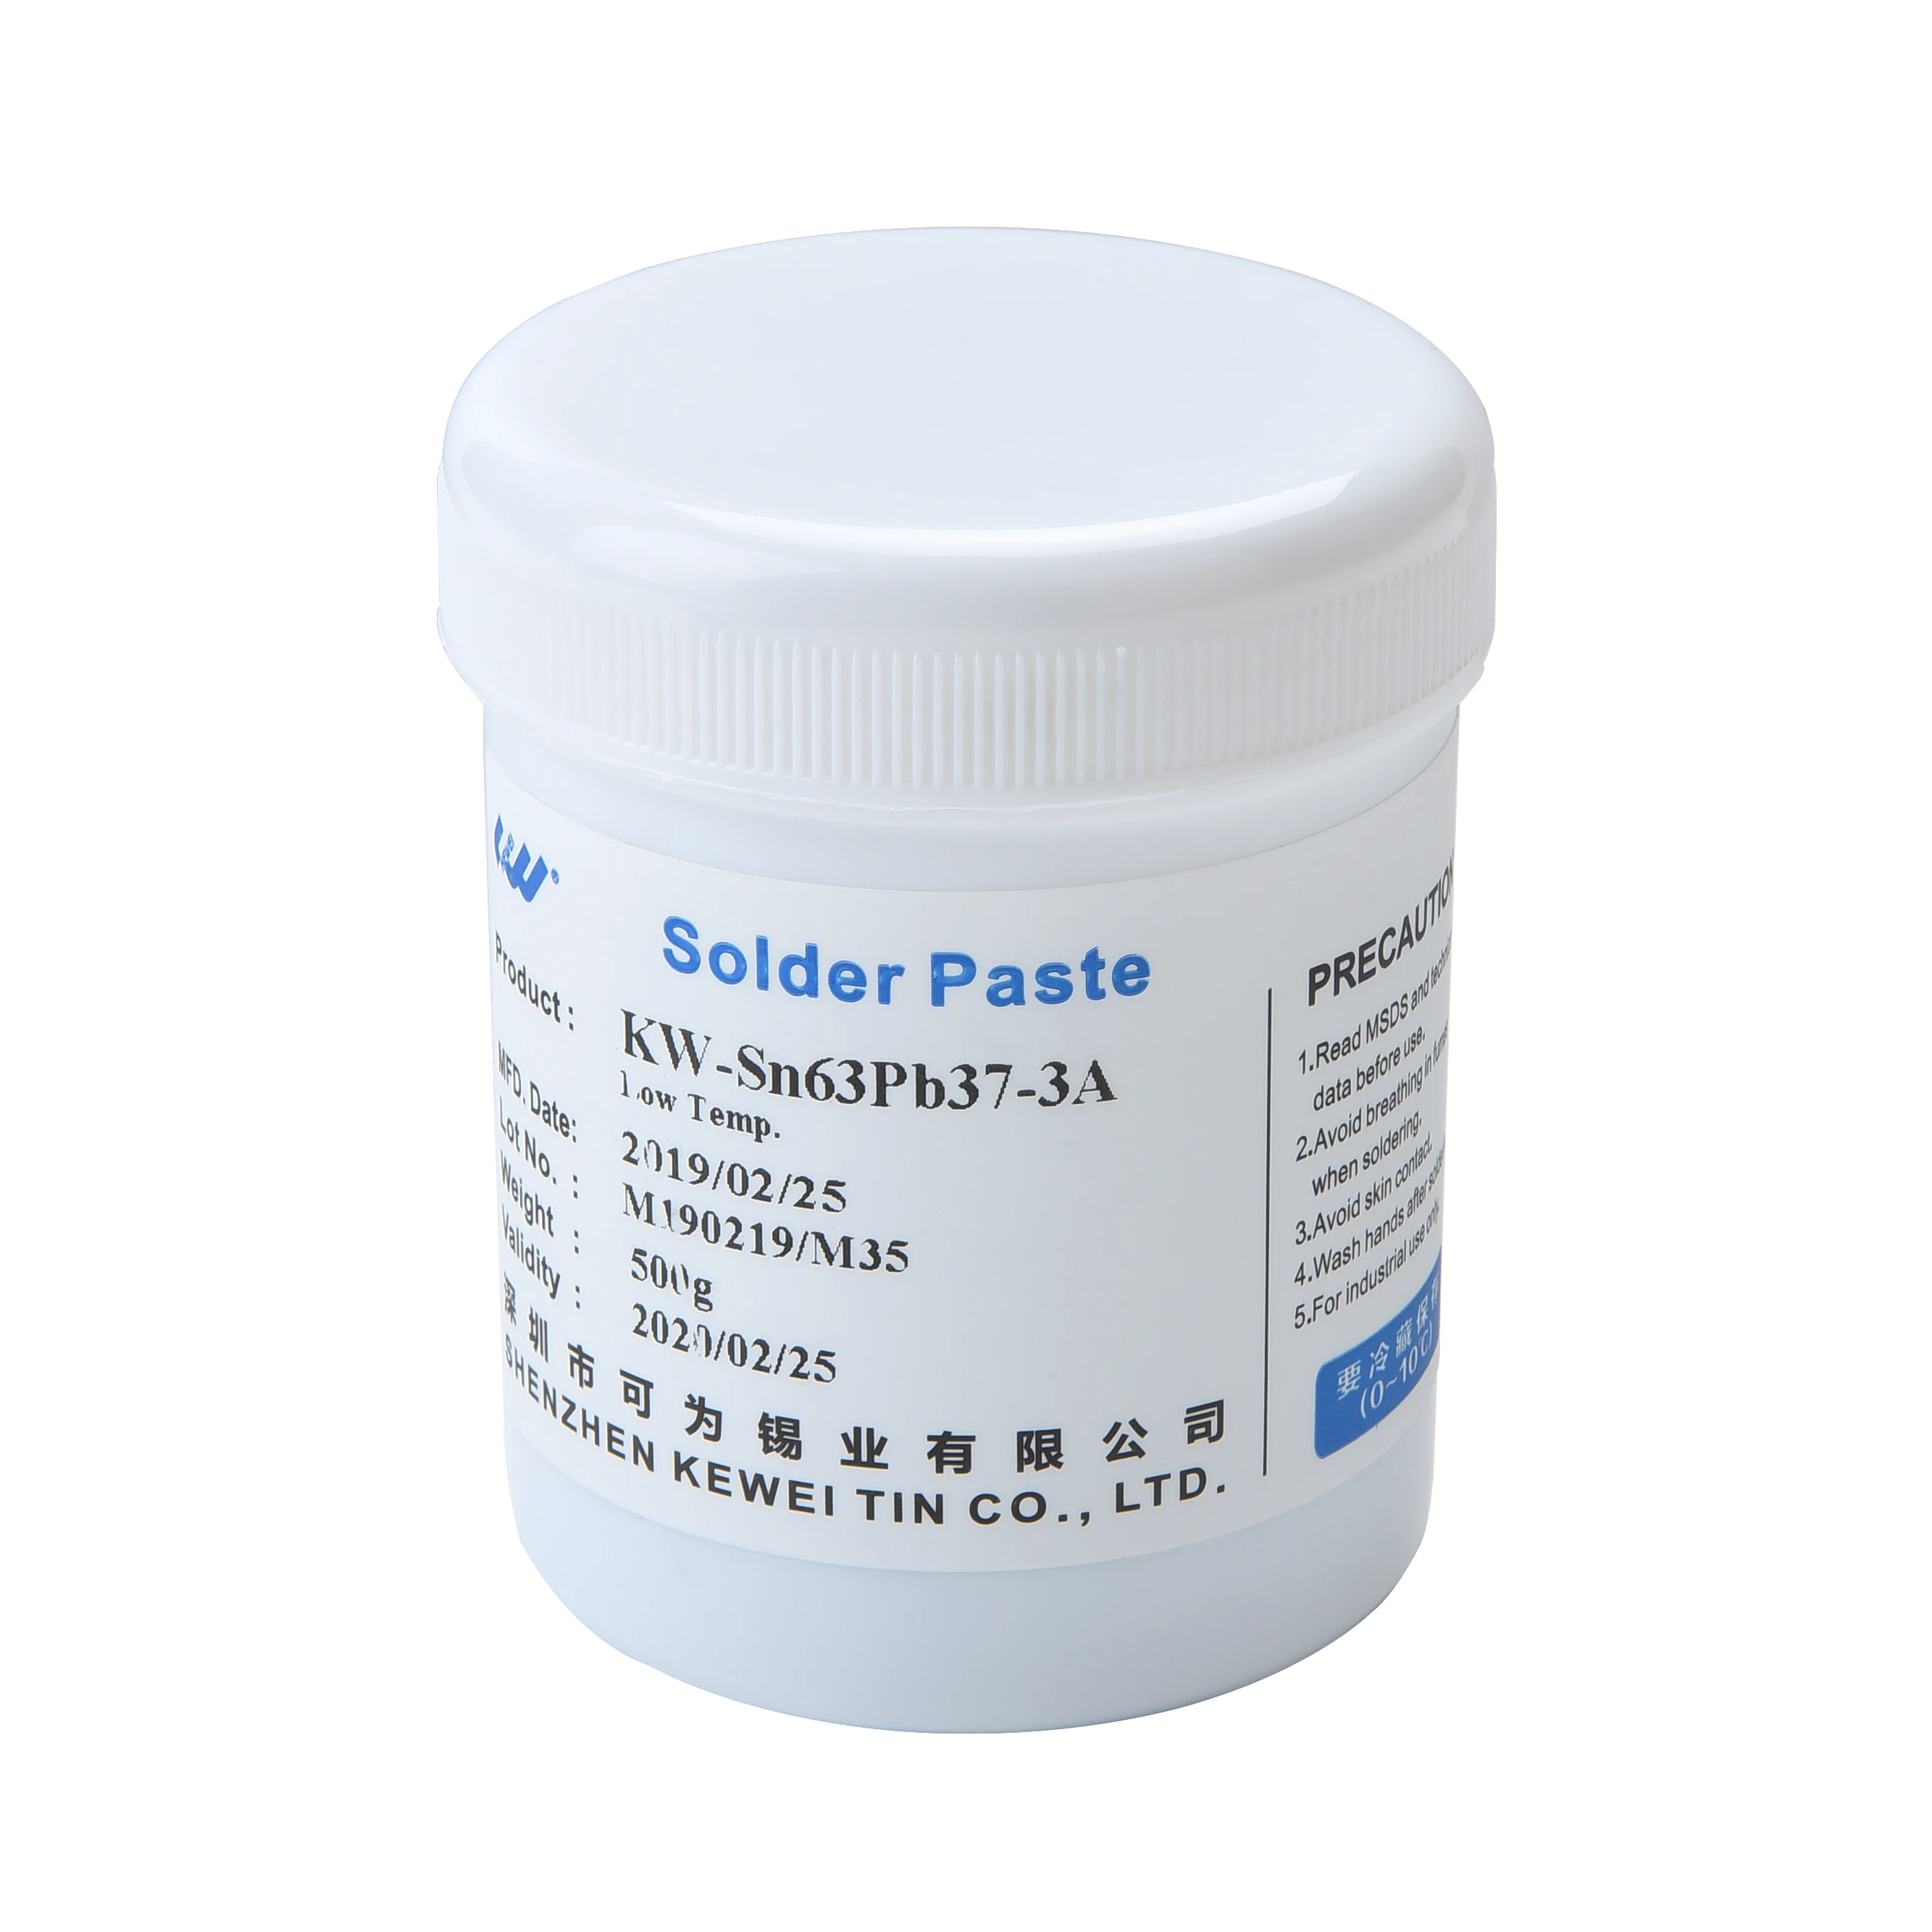 
LED Solder Paste SMT/PCB Special Usage Solder Paste 